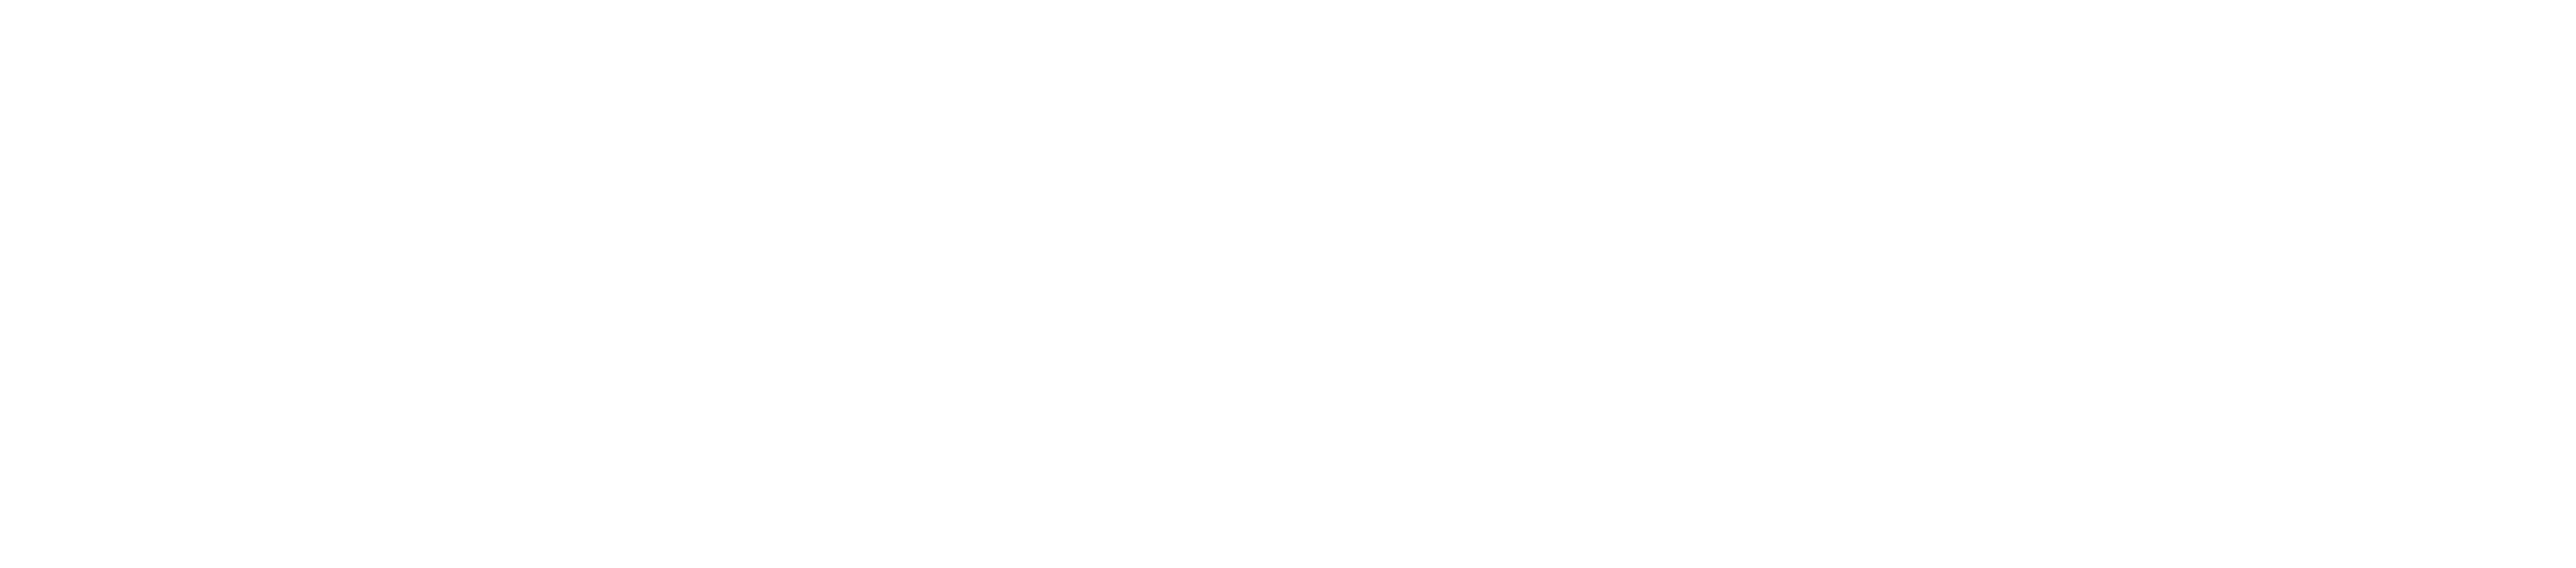 xCTF Logo